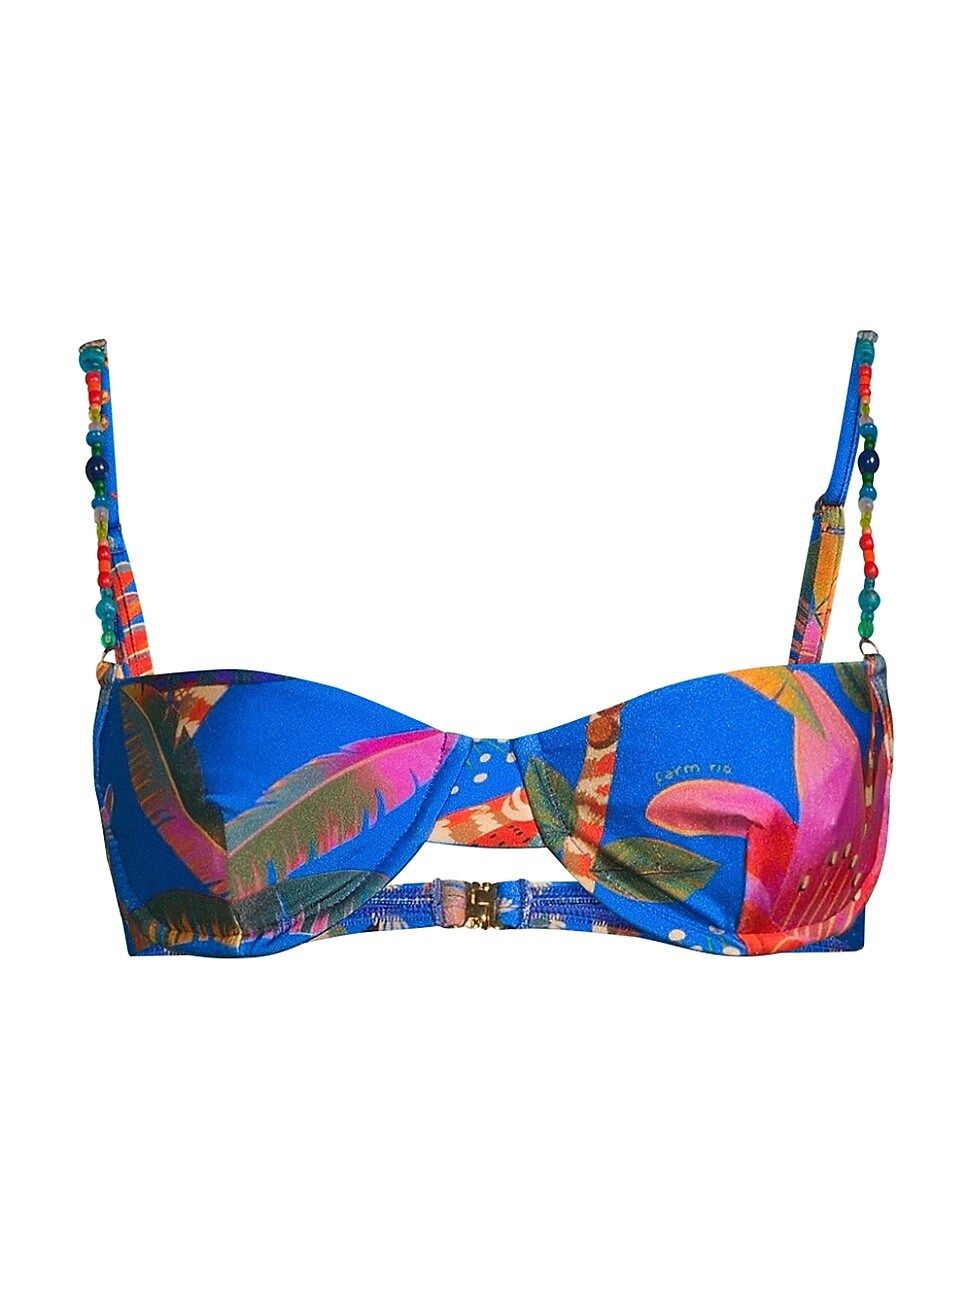 Women's Macaw Party Bikini Top - Macaw Party Blue - Size XL - Macaw Party Blue - Size XL | Saks Fifth Avenue